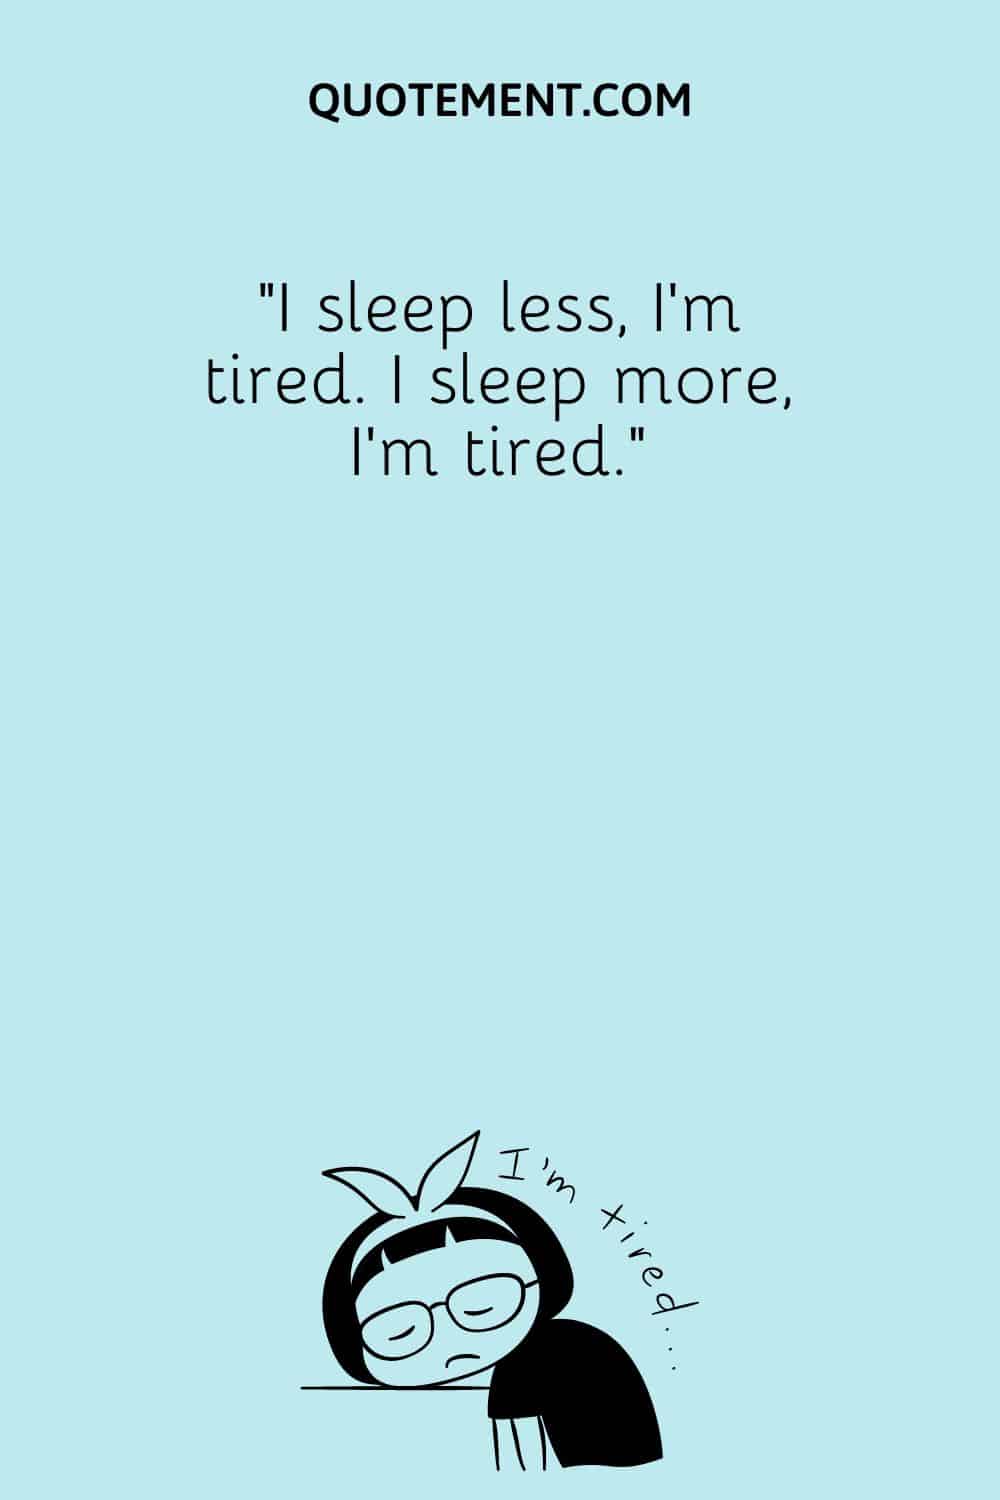 I sleep less, I’m tired. I sleep more, I’m tired